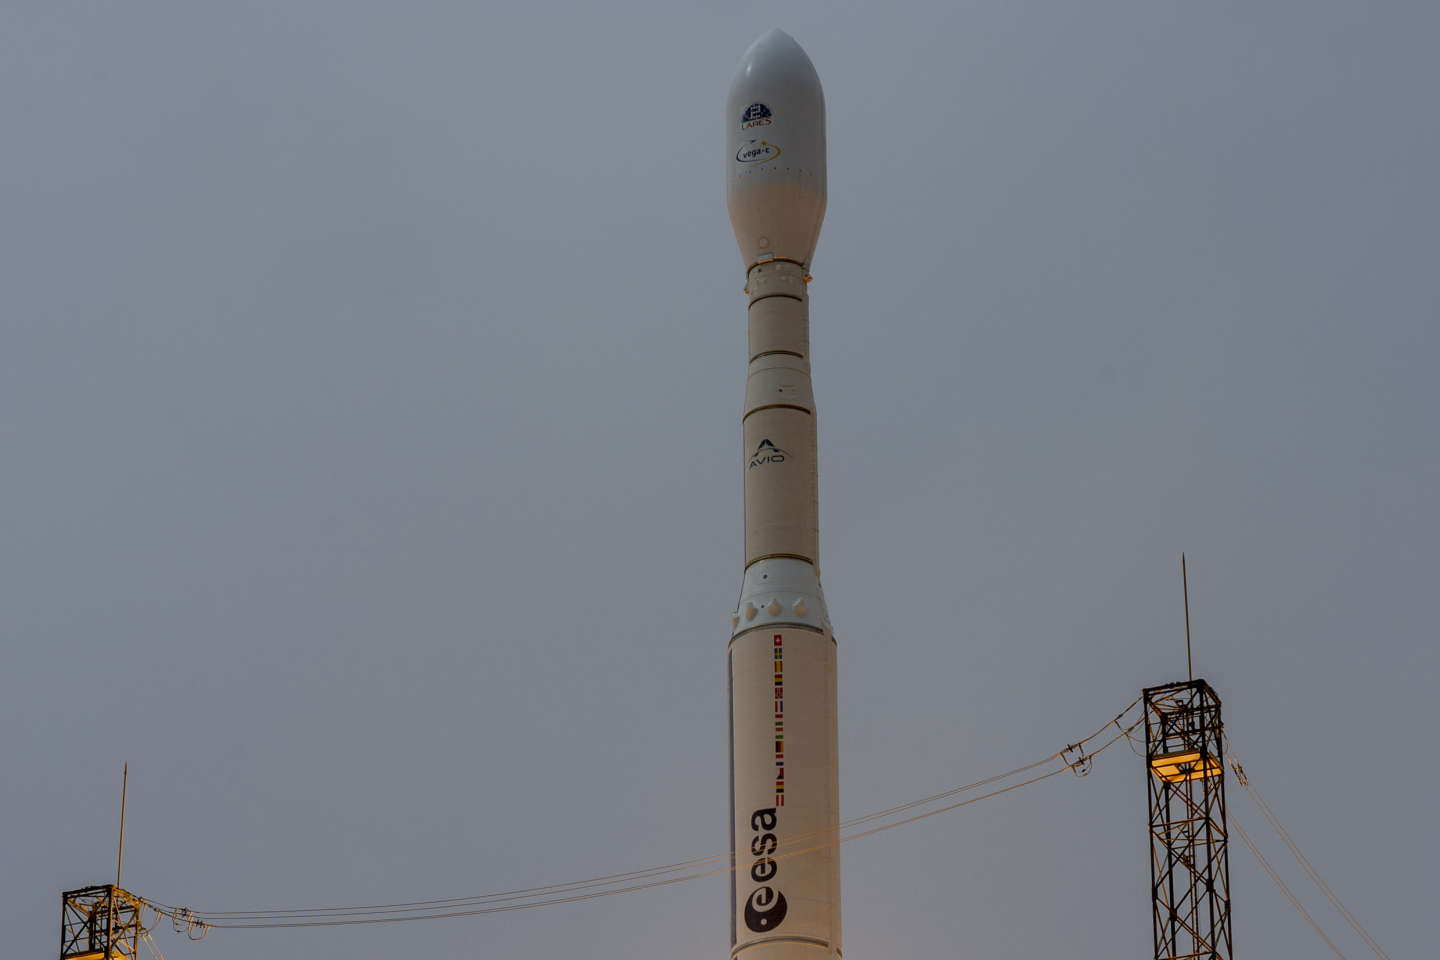 Echec du premier vol commercial de la fusée Vega-C, revers pour l’Europe spatiale